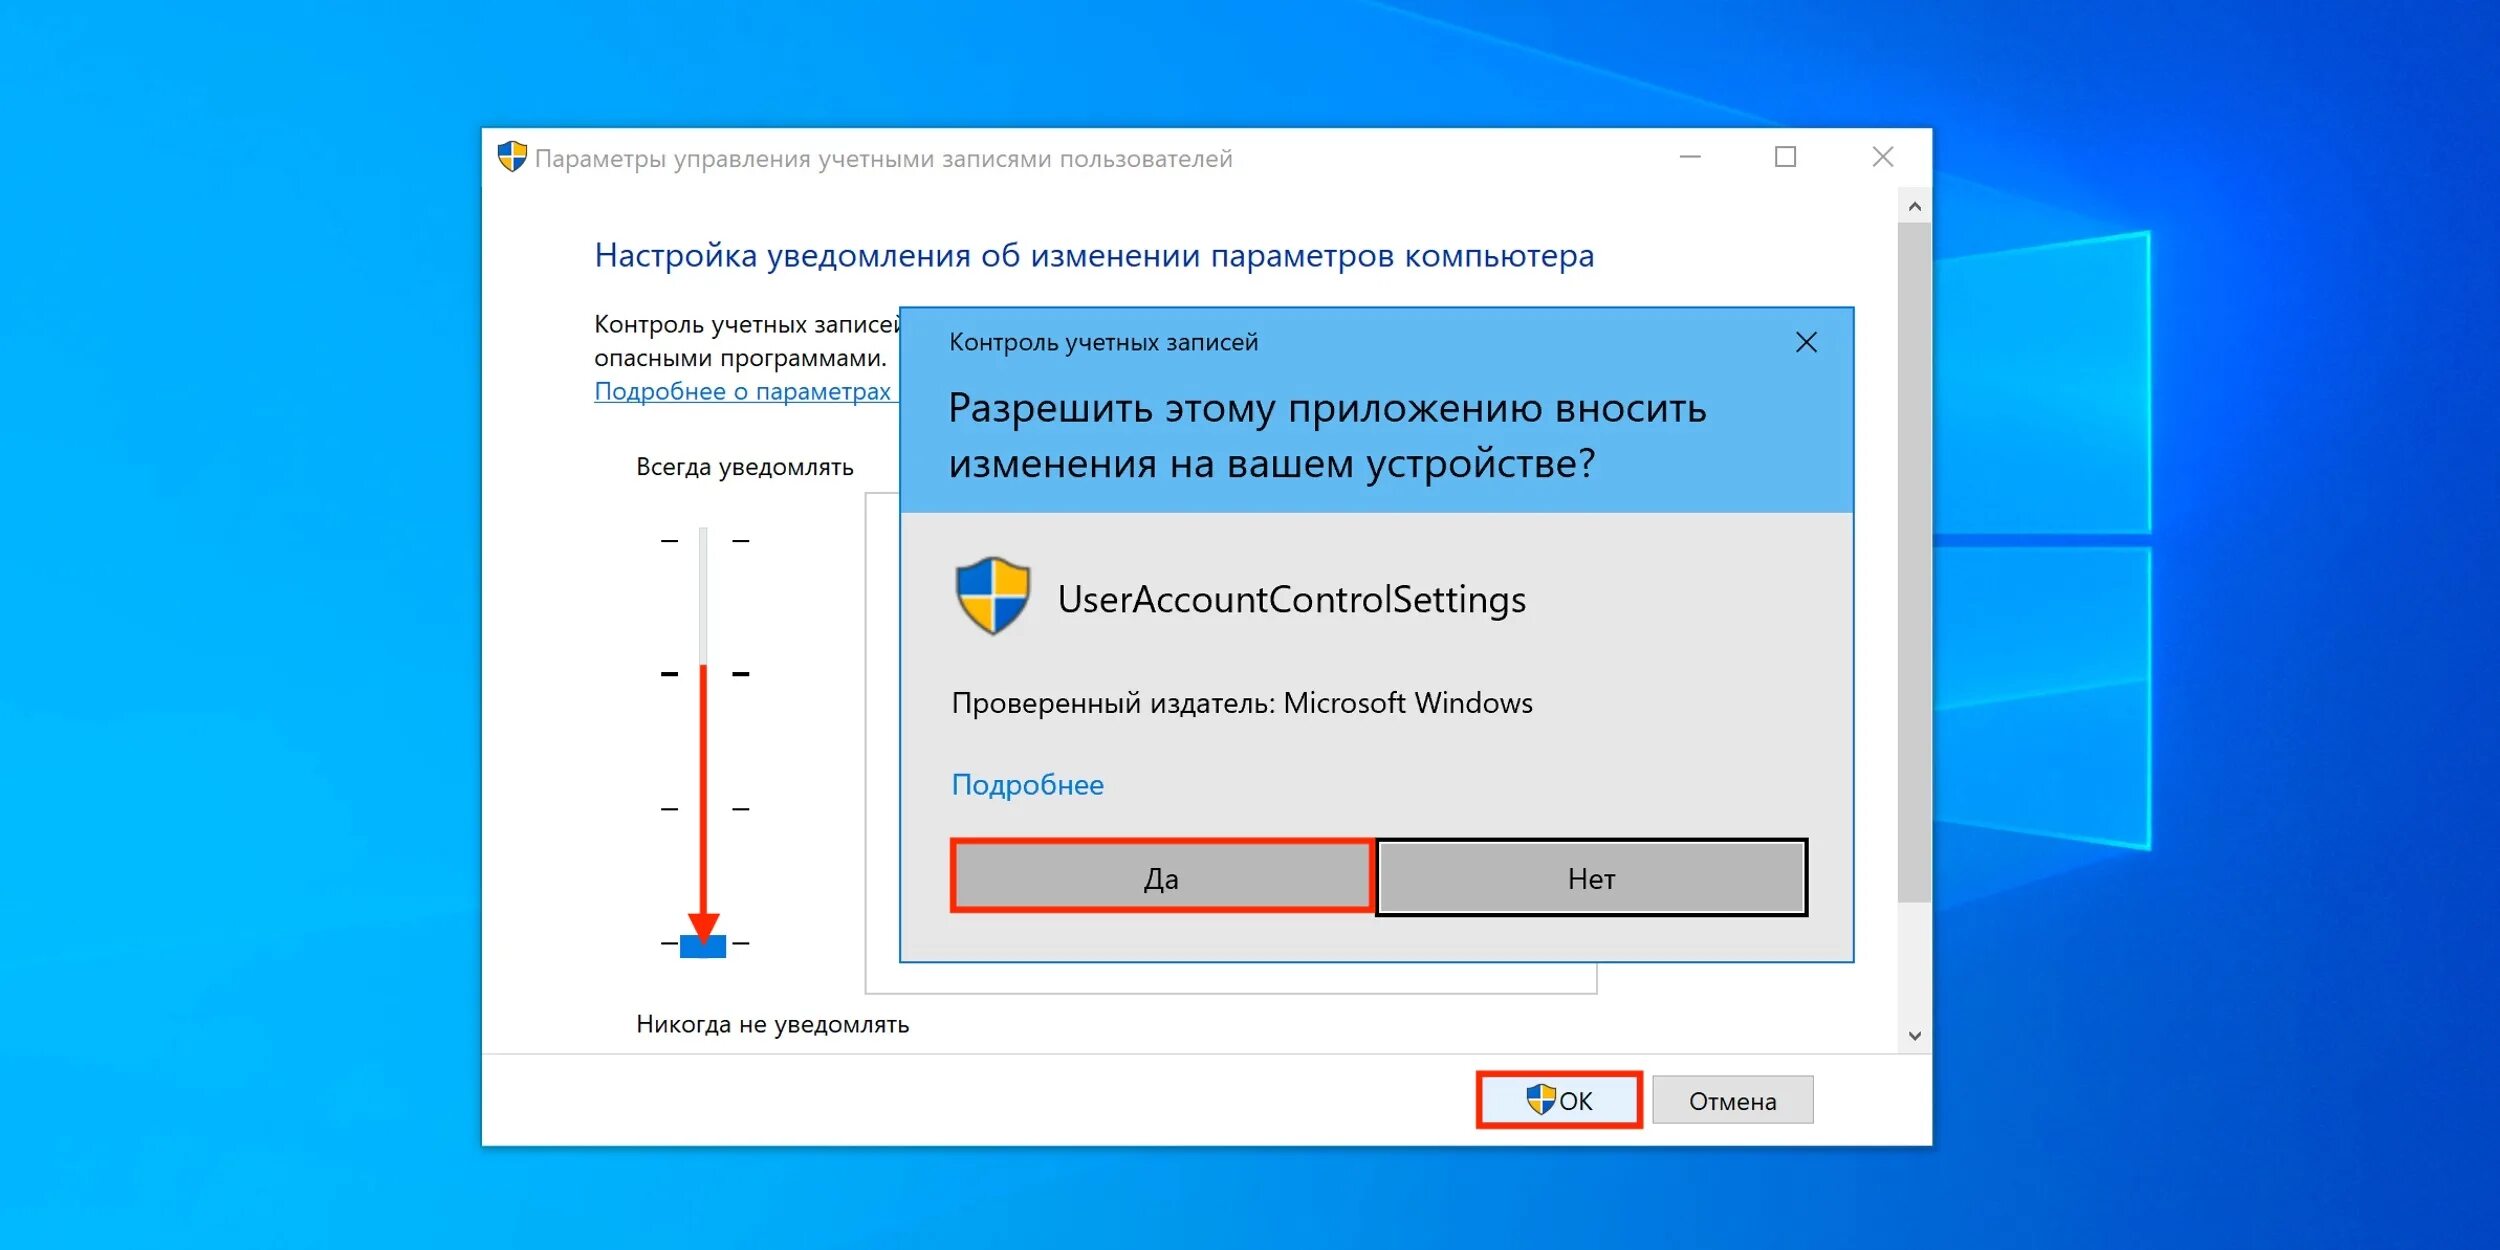 Пользователь деактивирован. Виндовс 10 параметры управления учетными записями пользователей. Контроль учетных записей. Контроль учётных записей пользователей. Контроль учетных записей Windows.